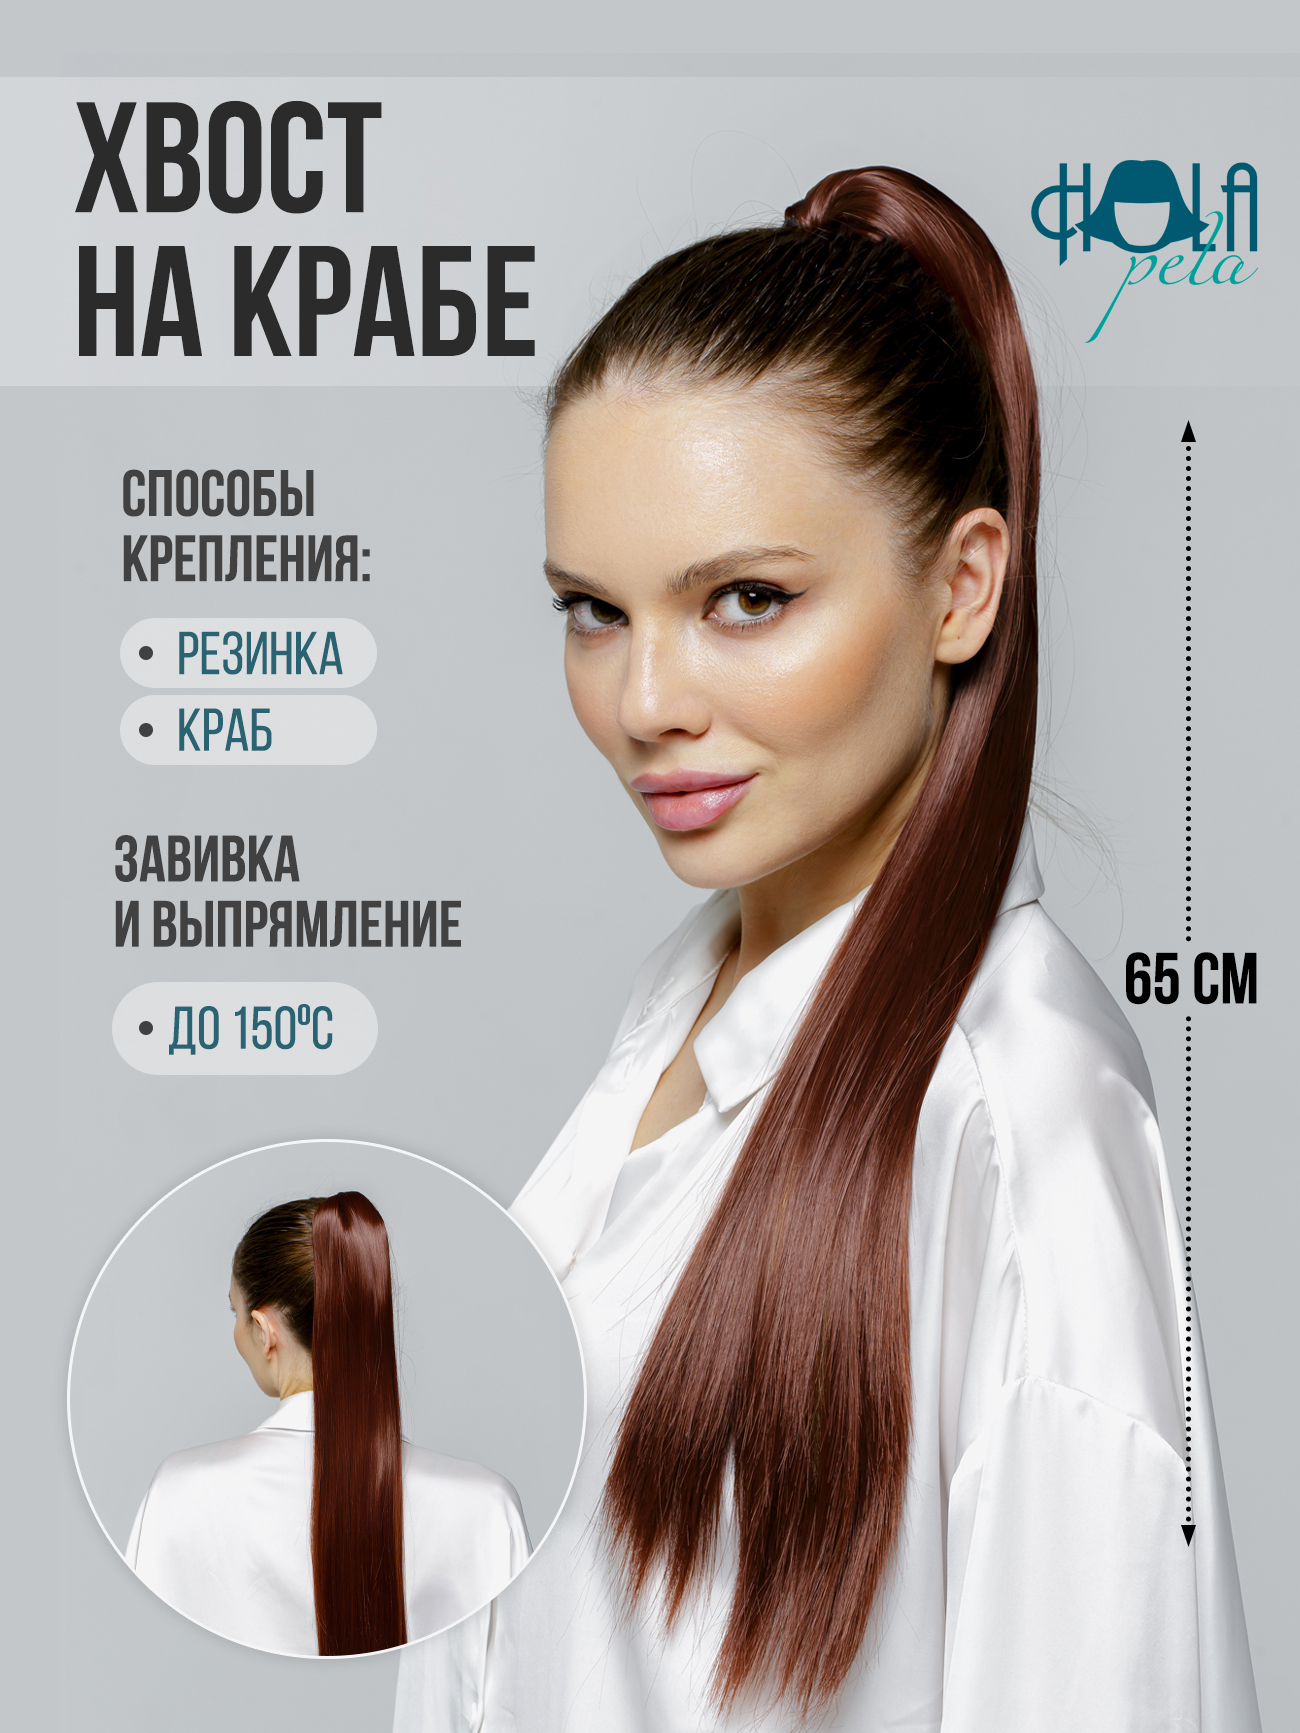 Купить шиньоны в интернет магазине paraskevat.ru | Страница 3